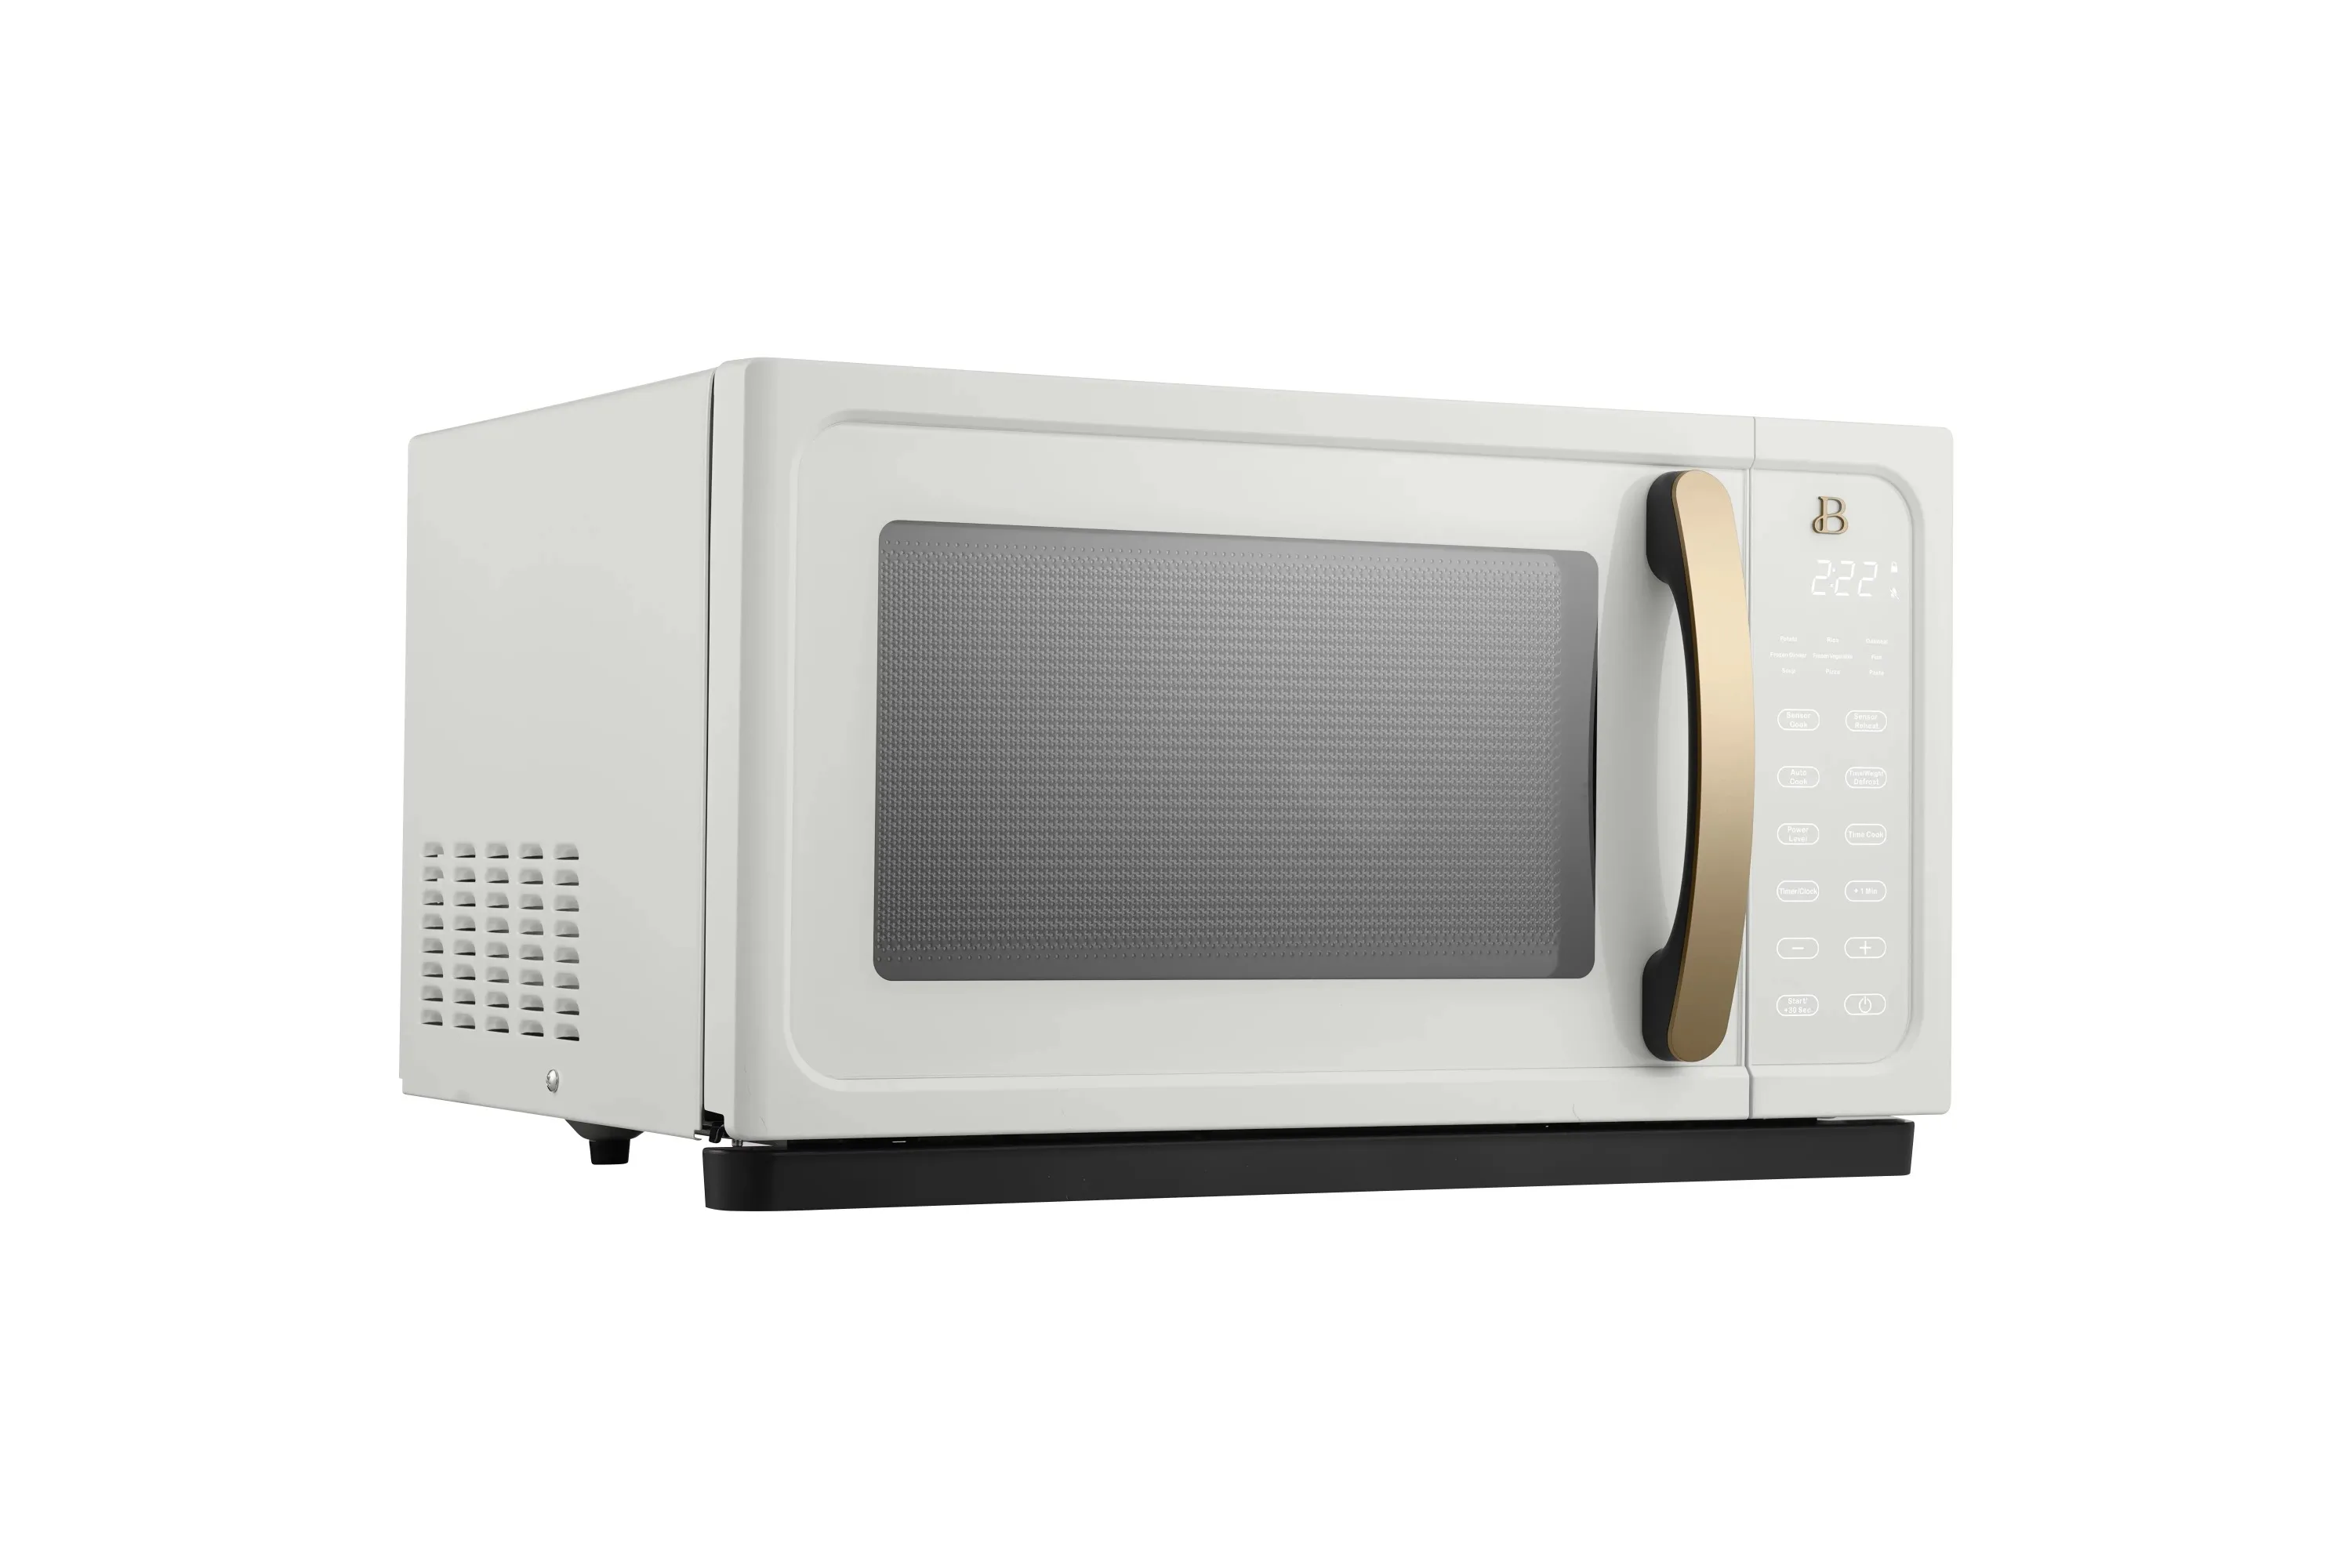 22 Retro Microwave